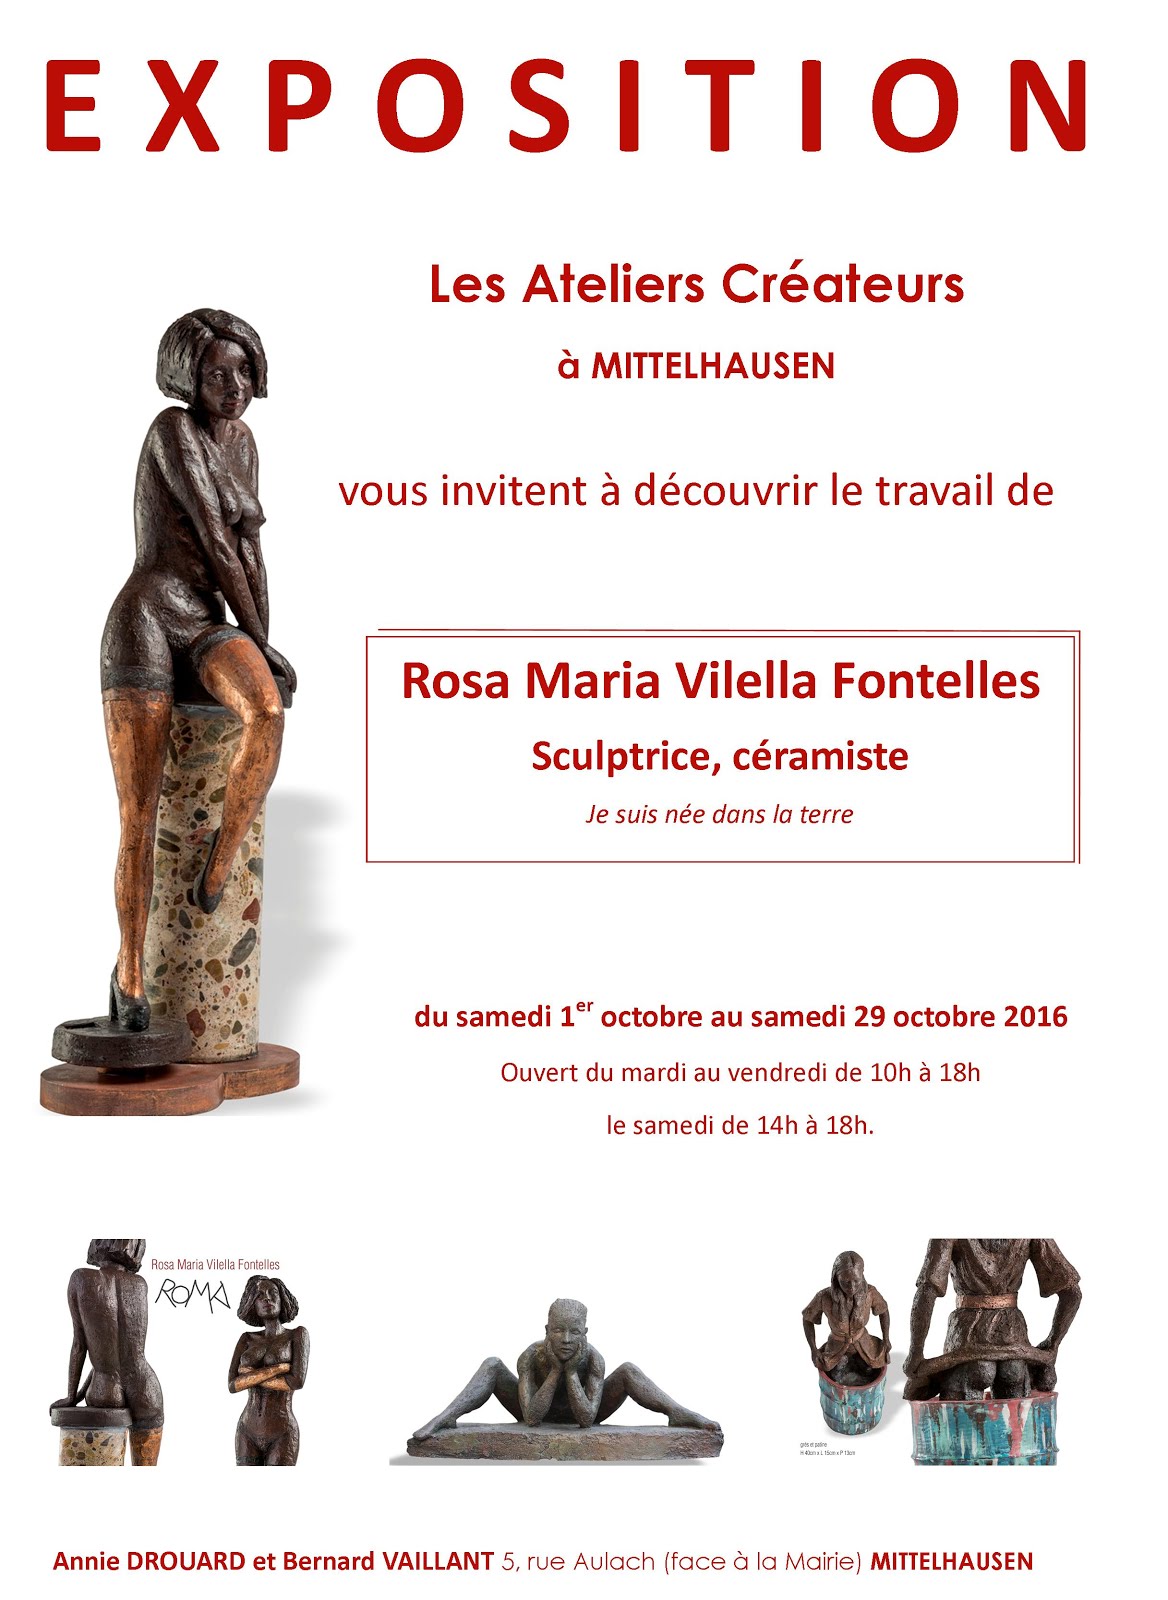 Rosa Maria Vilella Fontelles, artiste céramiste expose aux Ateliers Créateurs